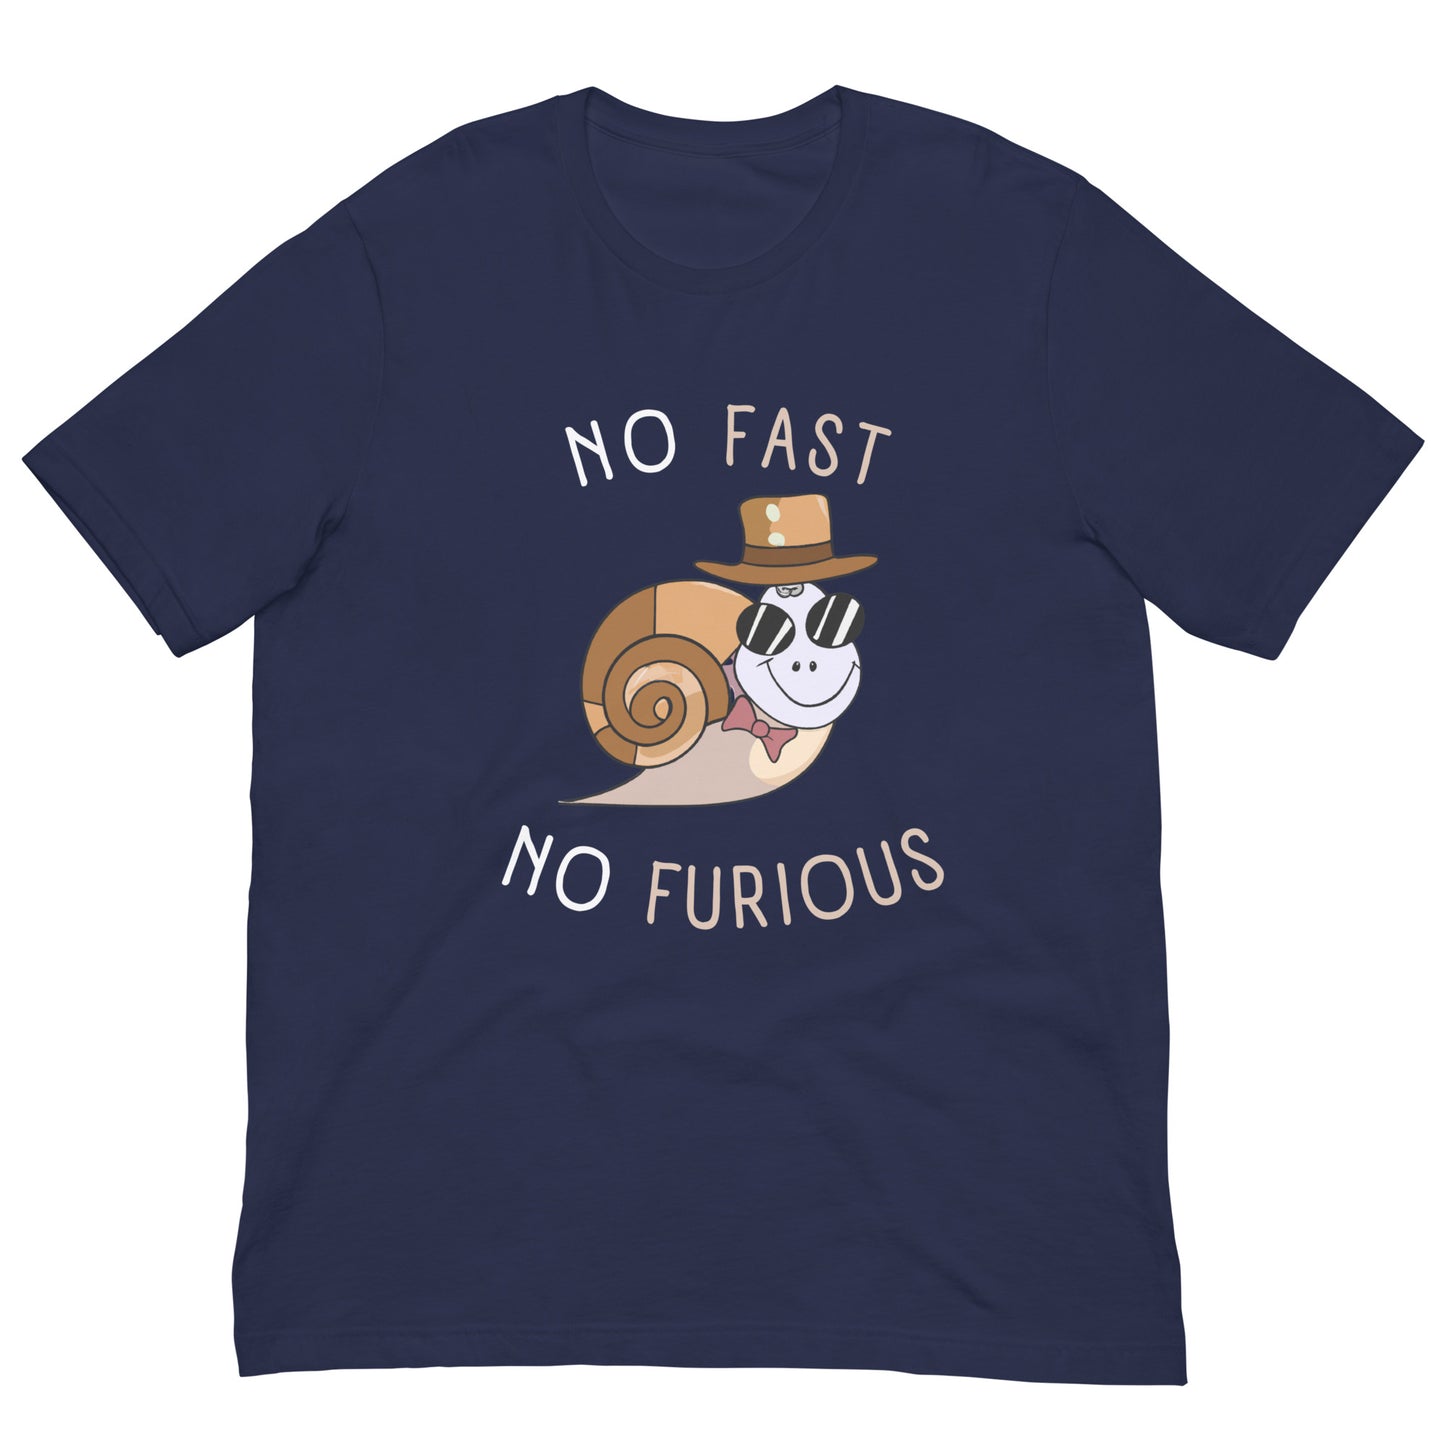 NO FAST NO FURIOUS - Unisex t-shirt